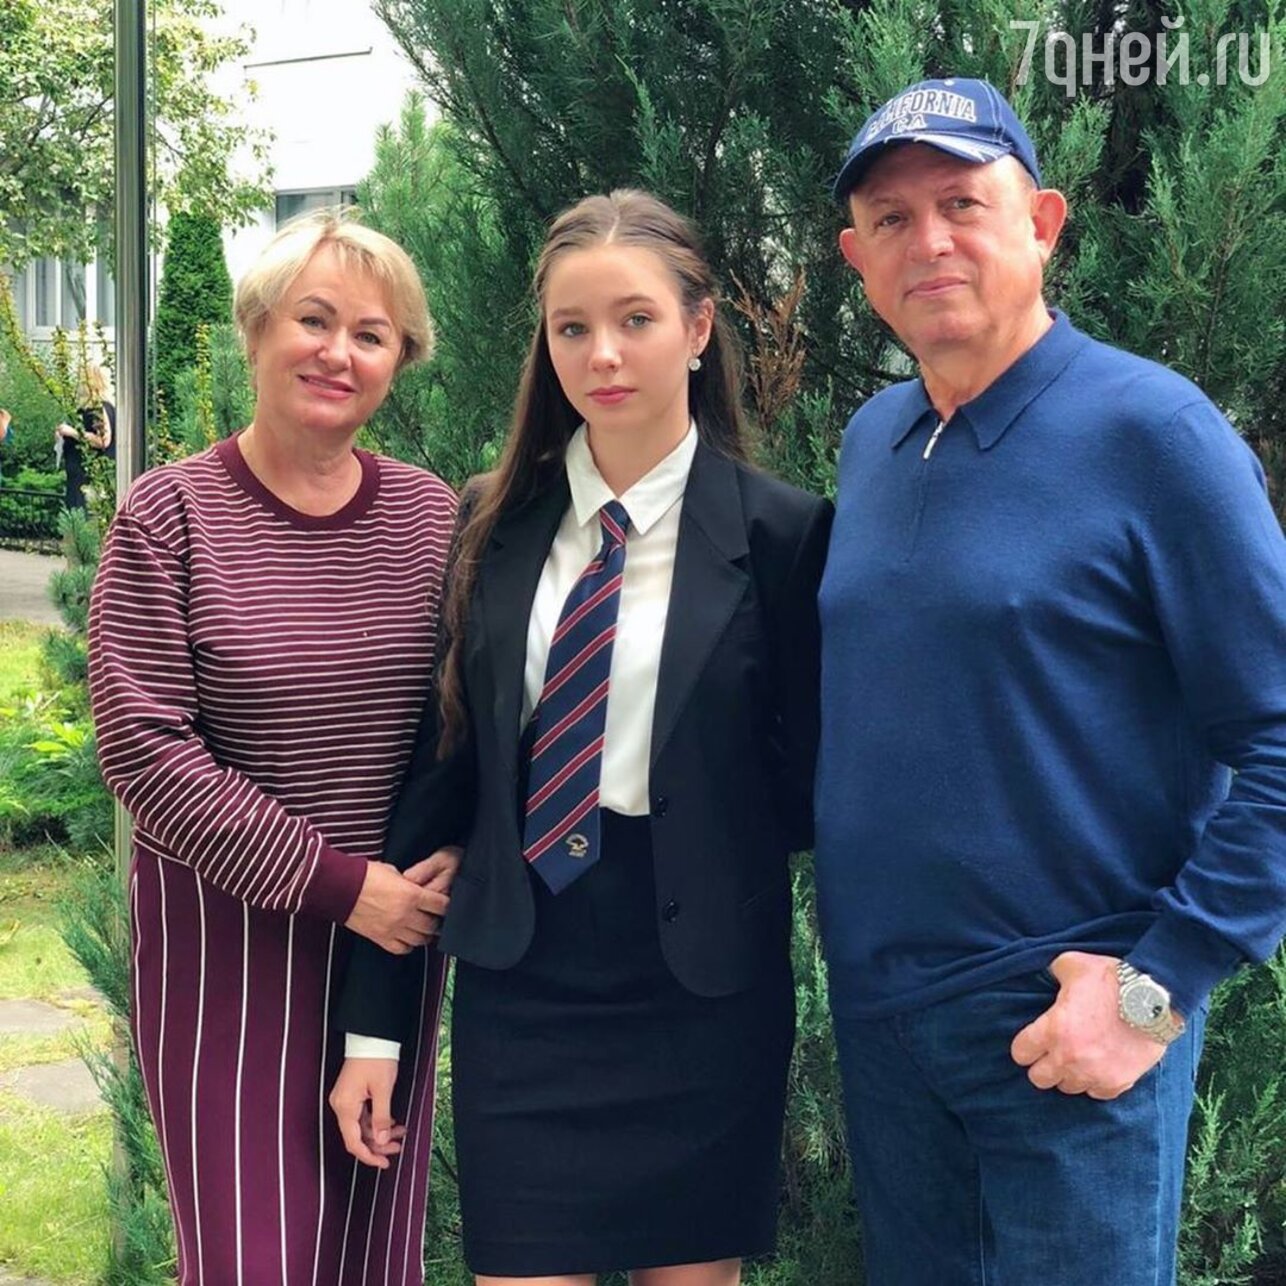 Родители Юлии Началовой с внучкой Верой